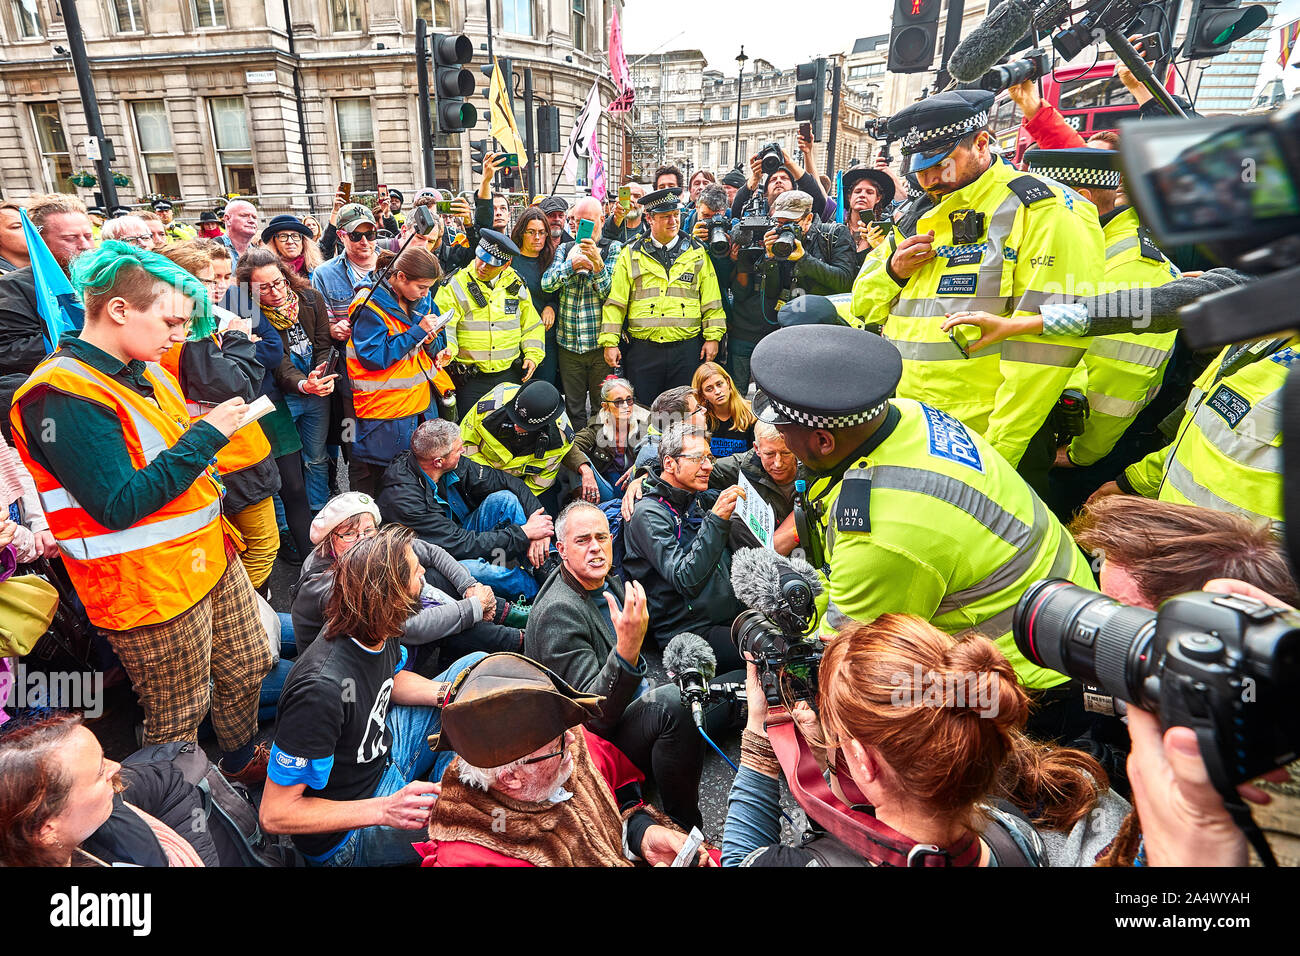 Londres, Reino Unido - 16 Oct, 2019: activistas ambientales George Monbiot y Jonathan Bartley en medio de los medios y la policía scrum antes de ser arrestado en Trafalgar Square. Foto de stock